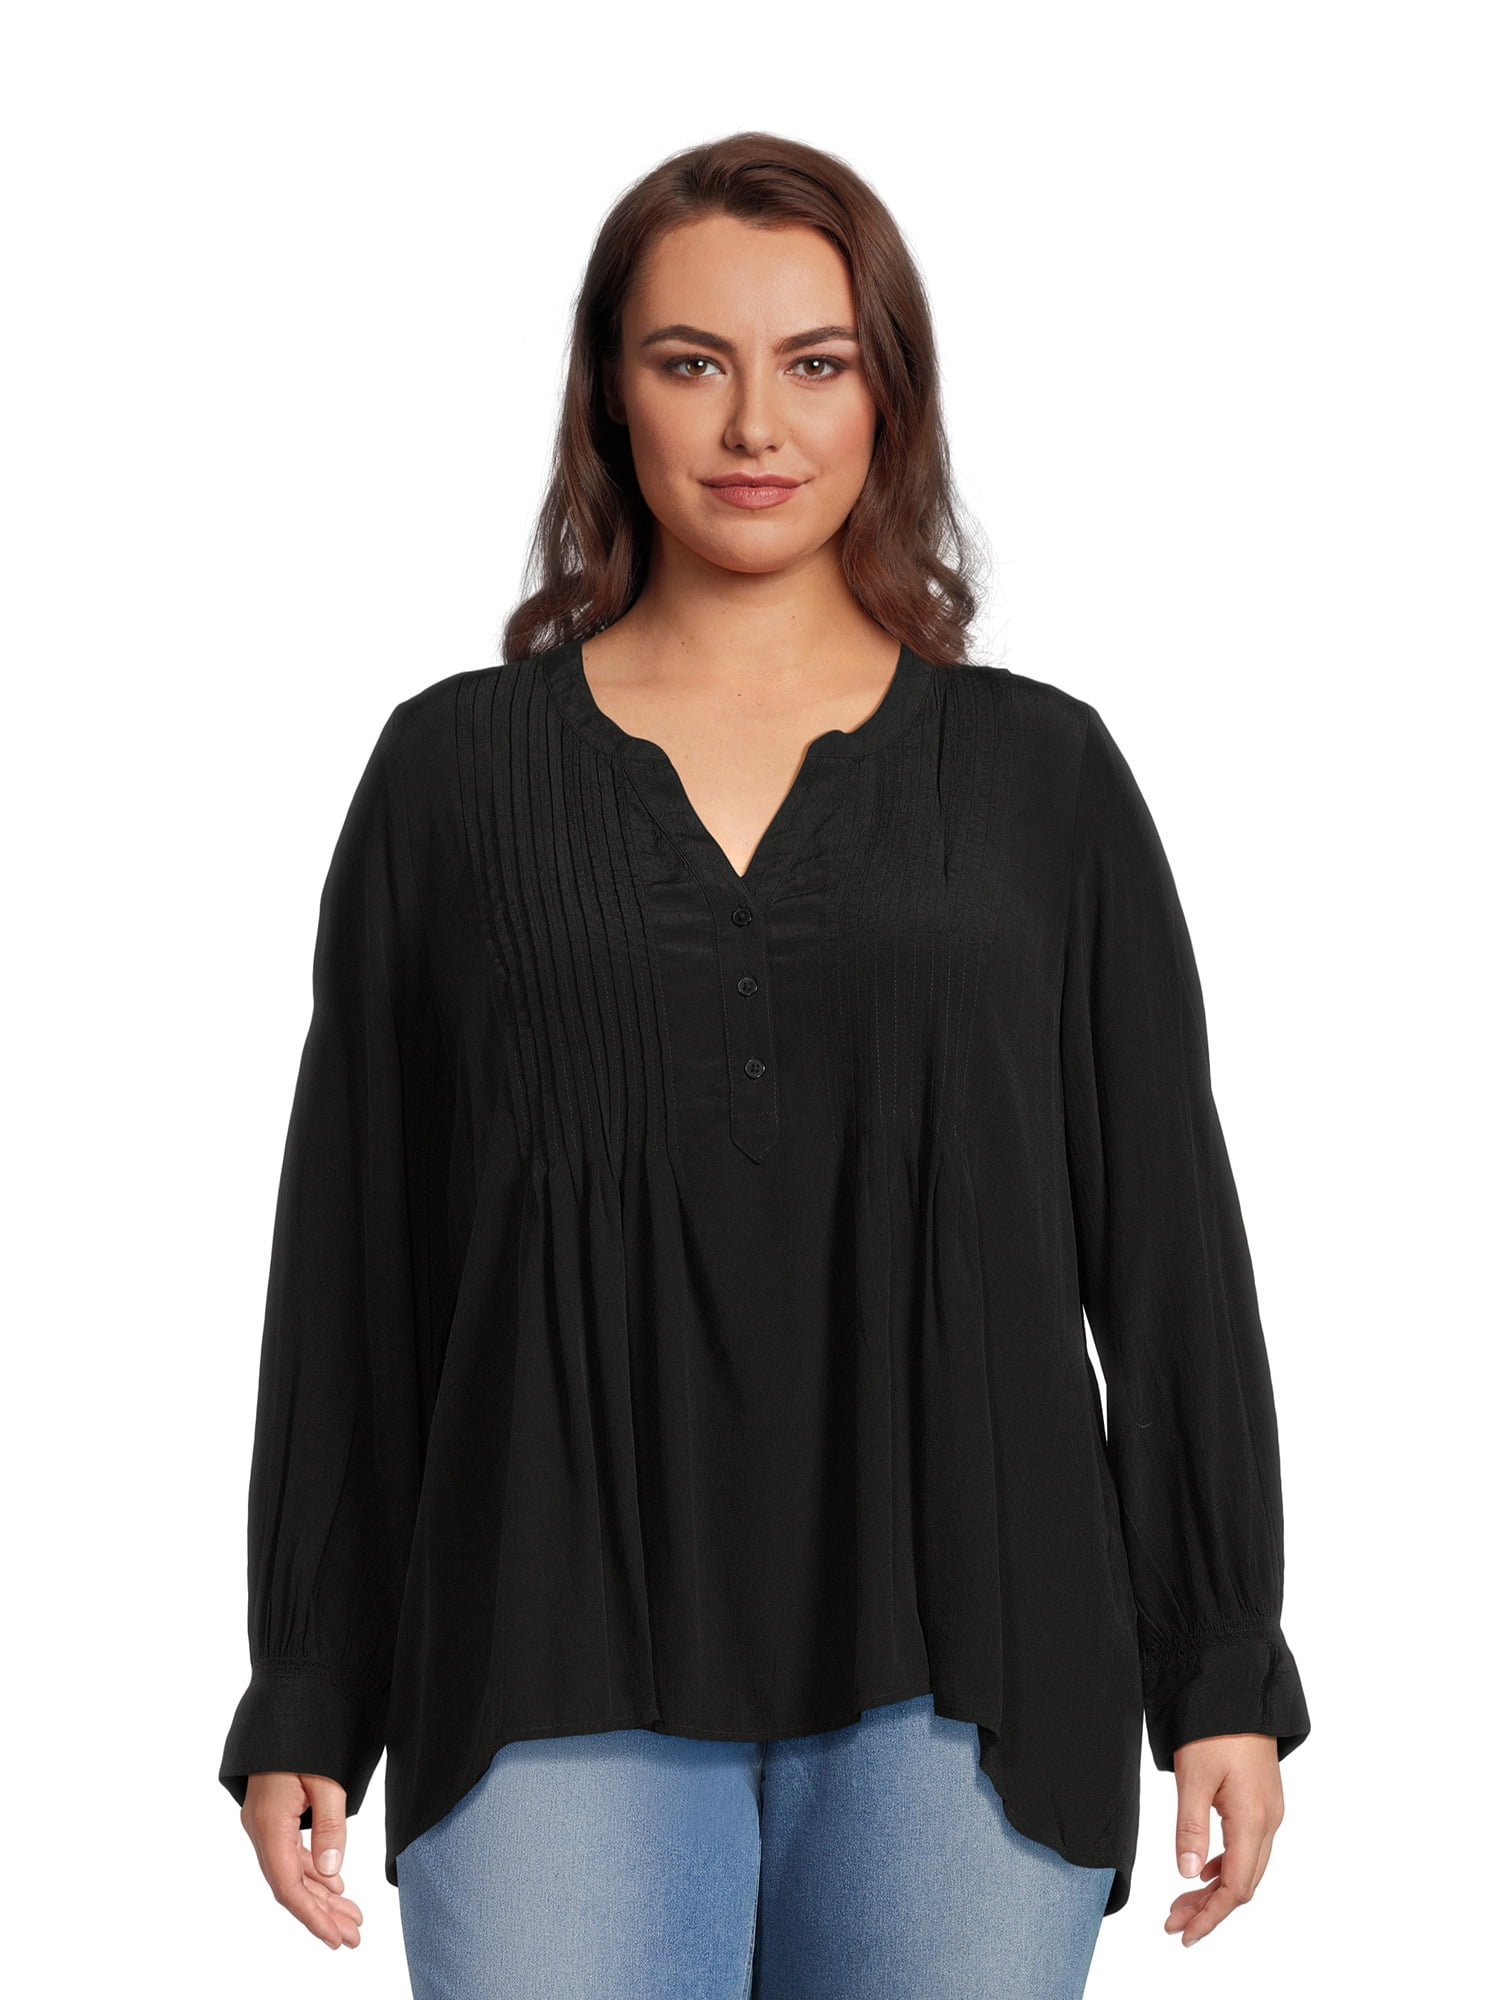 Terra & Sky Women's Plus Size Pleated Long Sleeve Blouse - Walmart.com